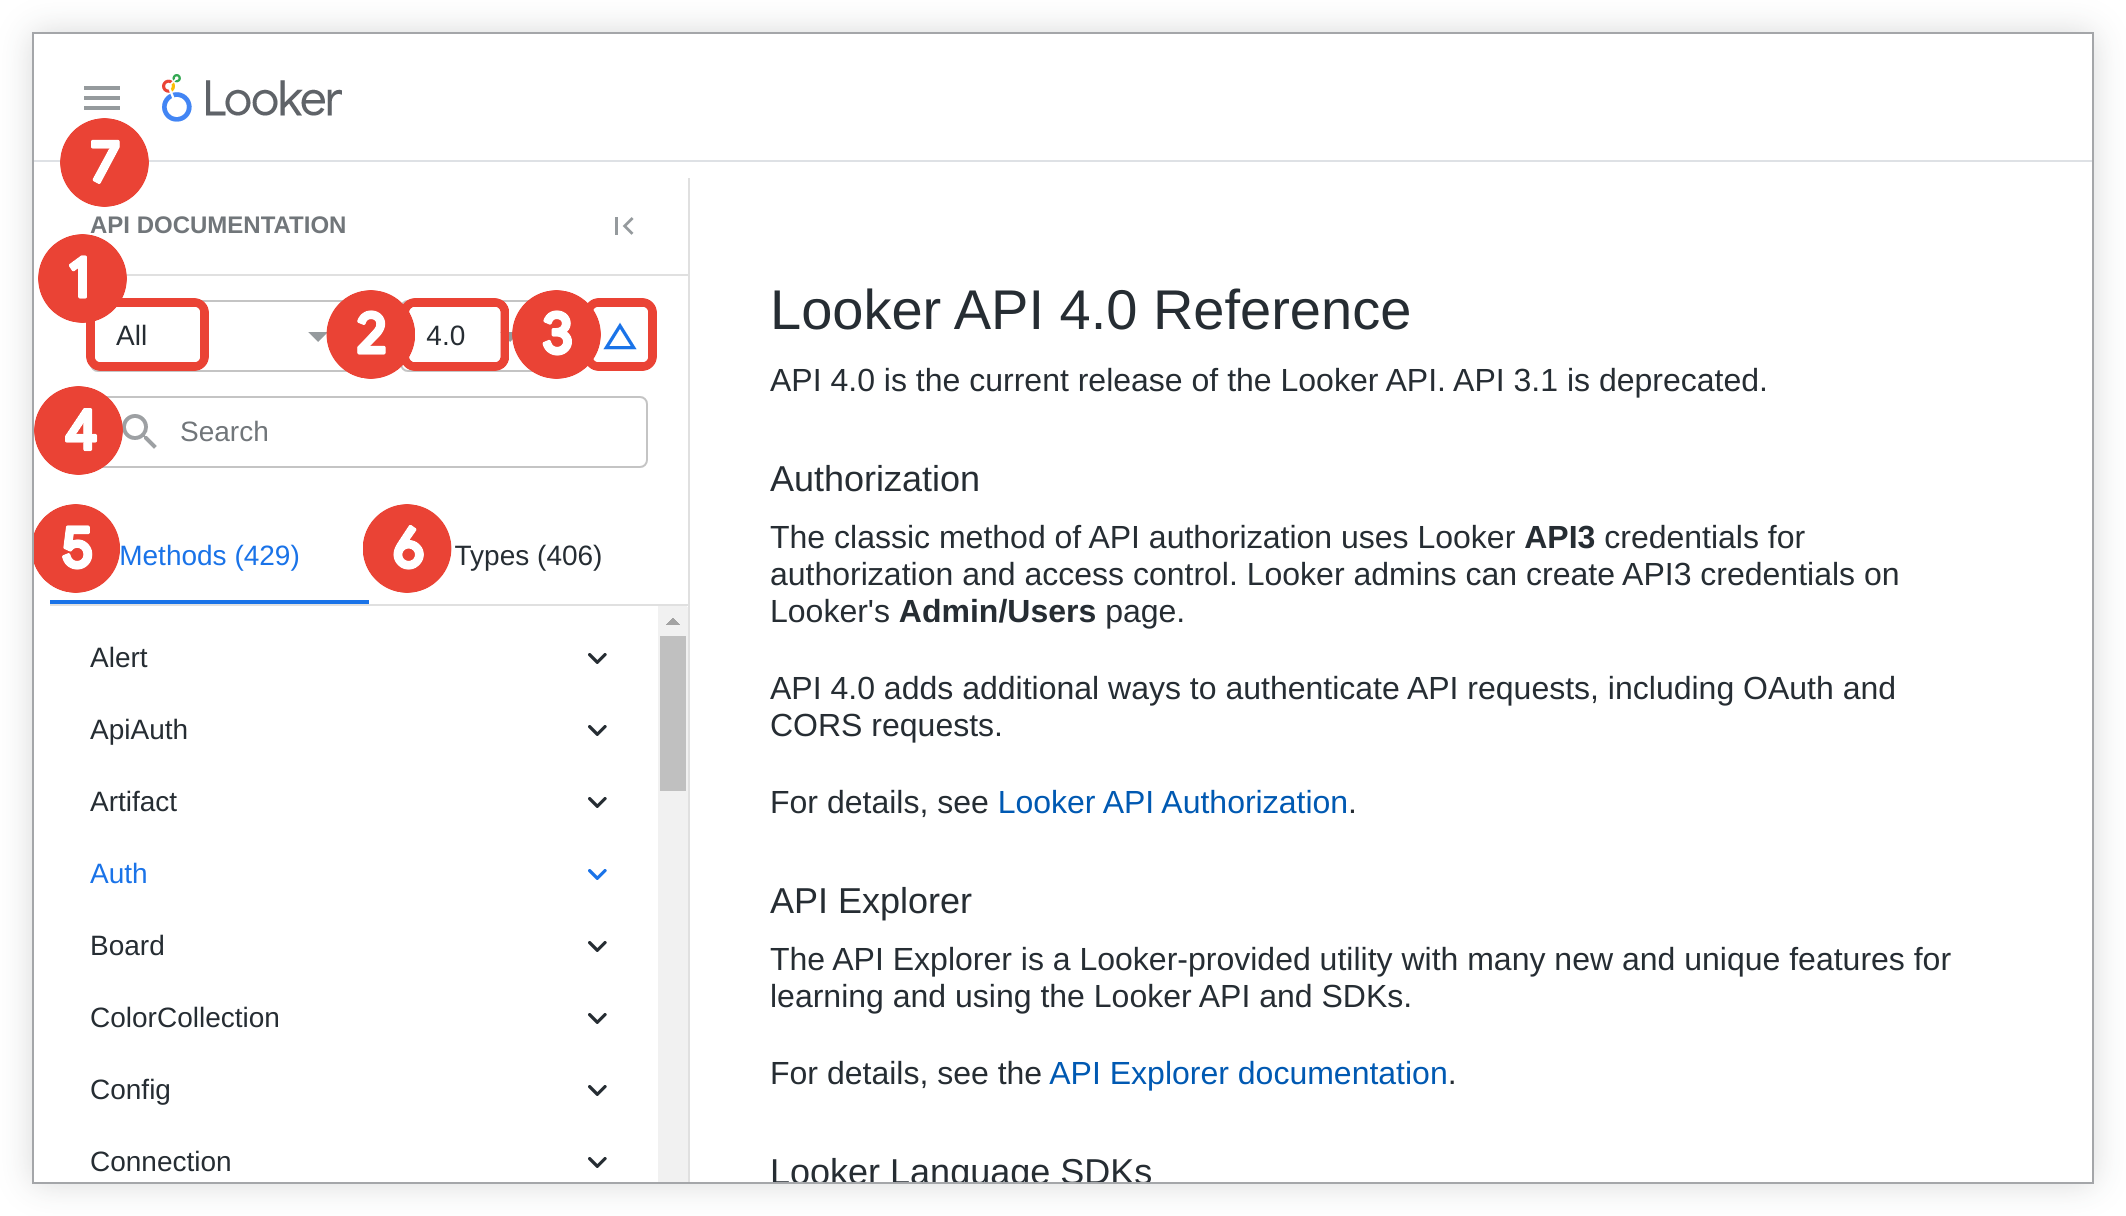 Schema van Looker API.